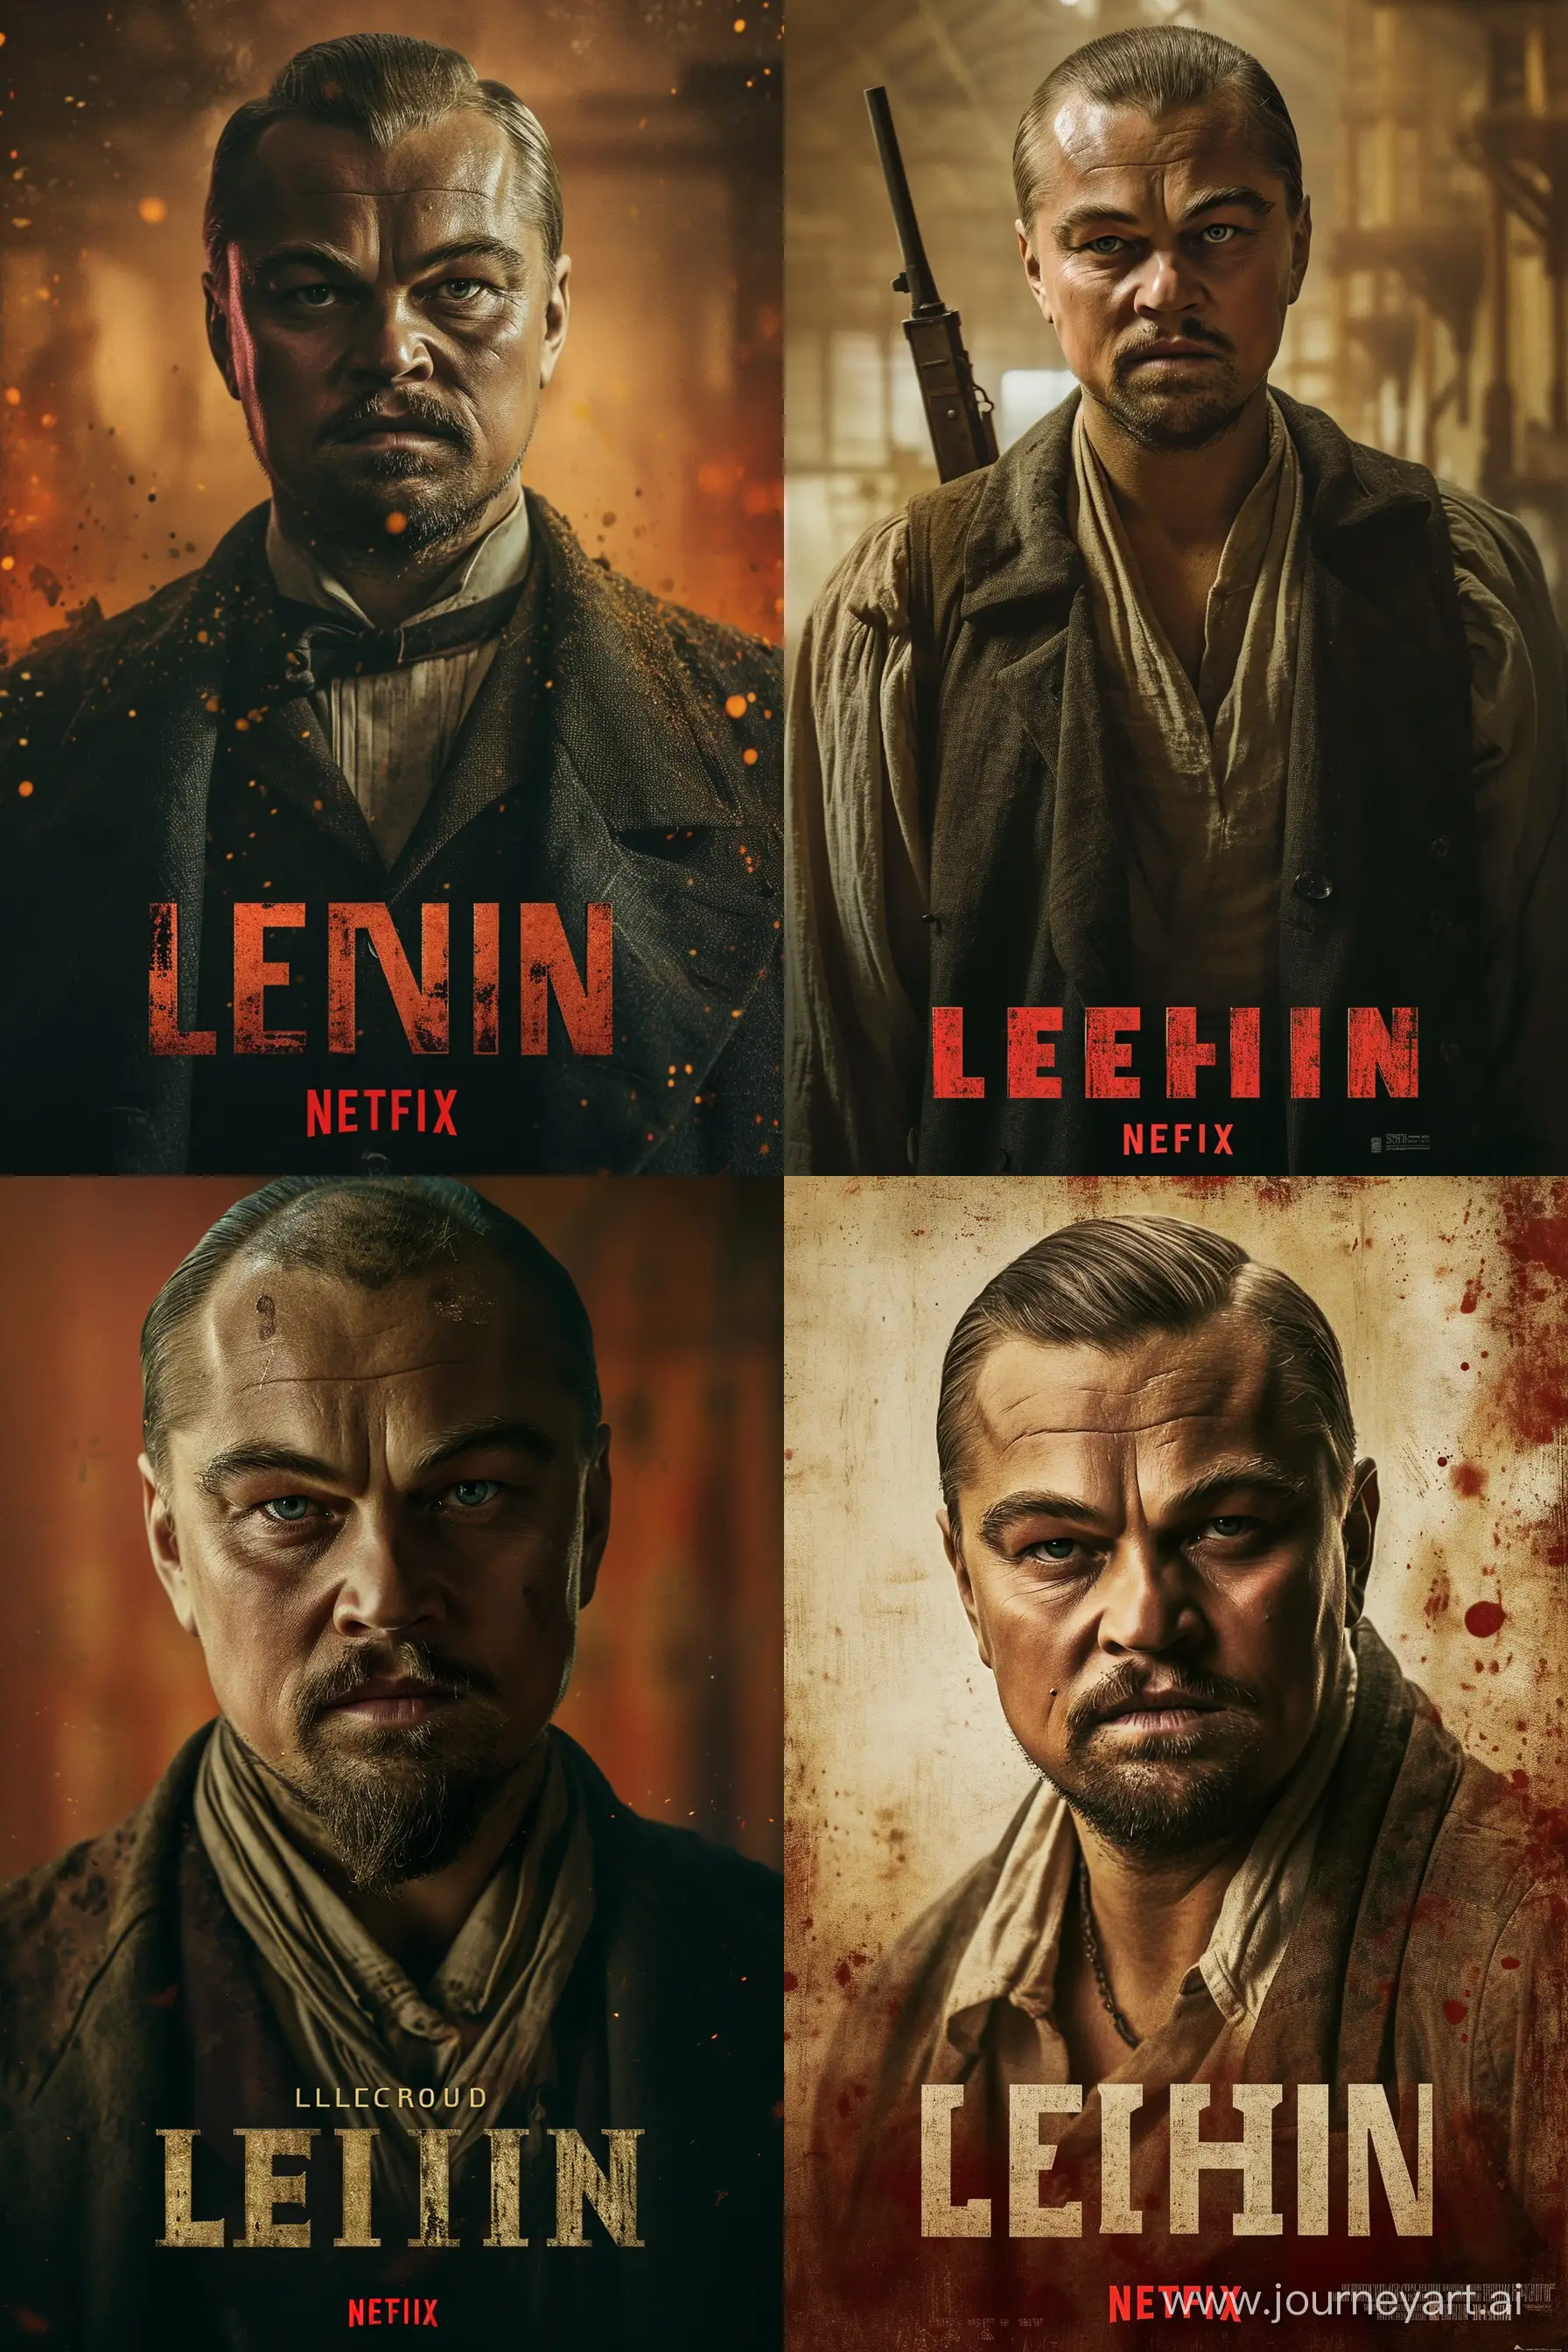 Balding-Leonardo-DiCaprio-Portrays-Lenin-in-Soviet-Movie-Poster